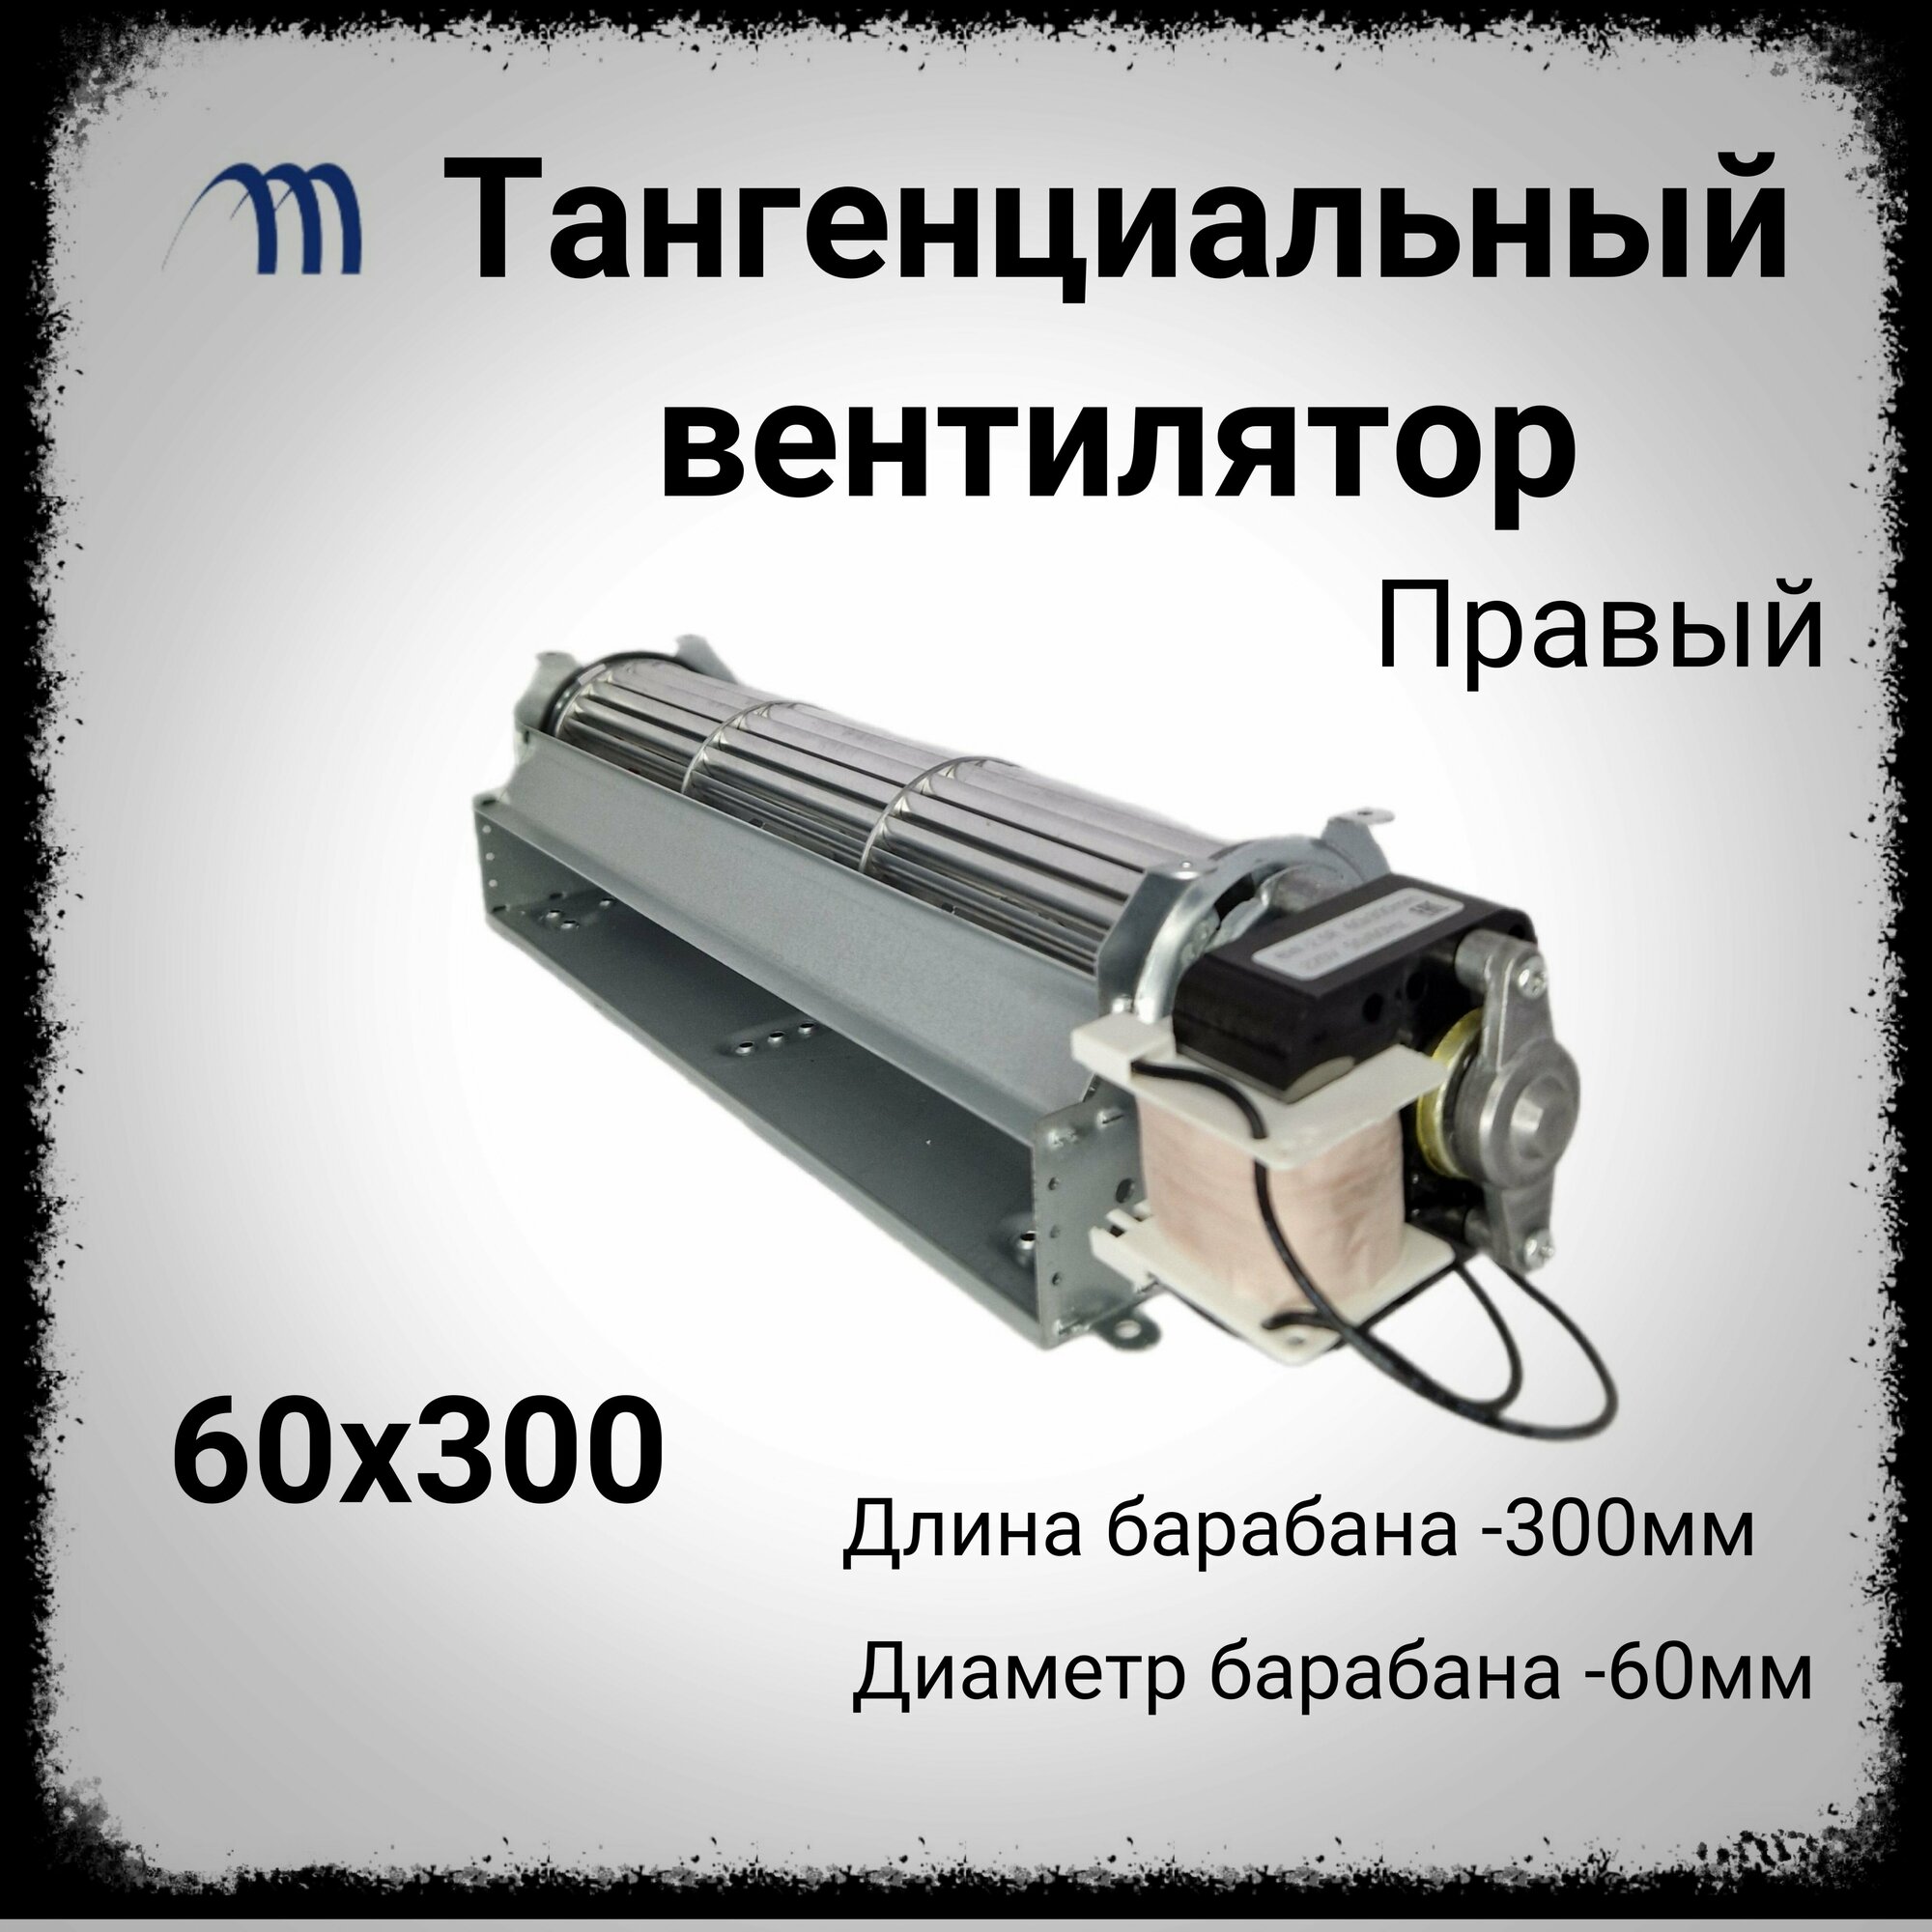 Вентилятор тангенциальный 60-300 микродвигатель правый